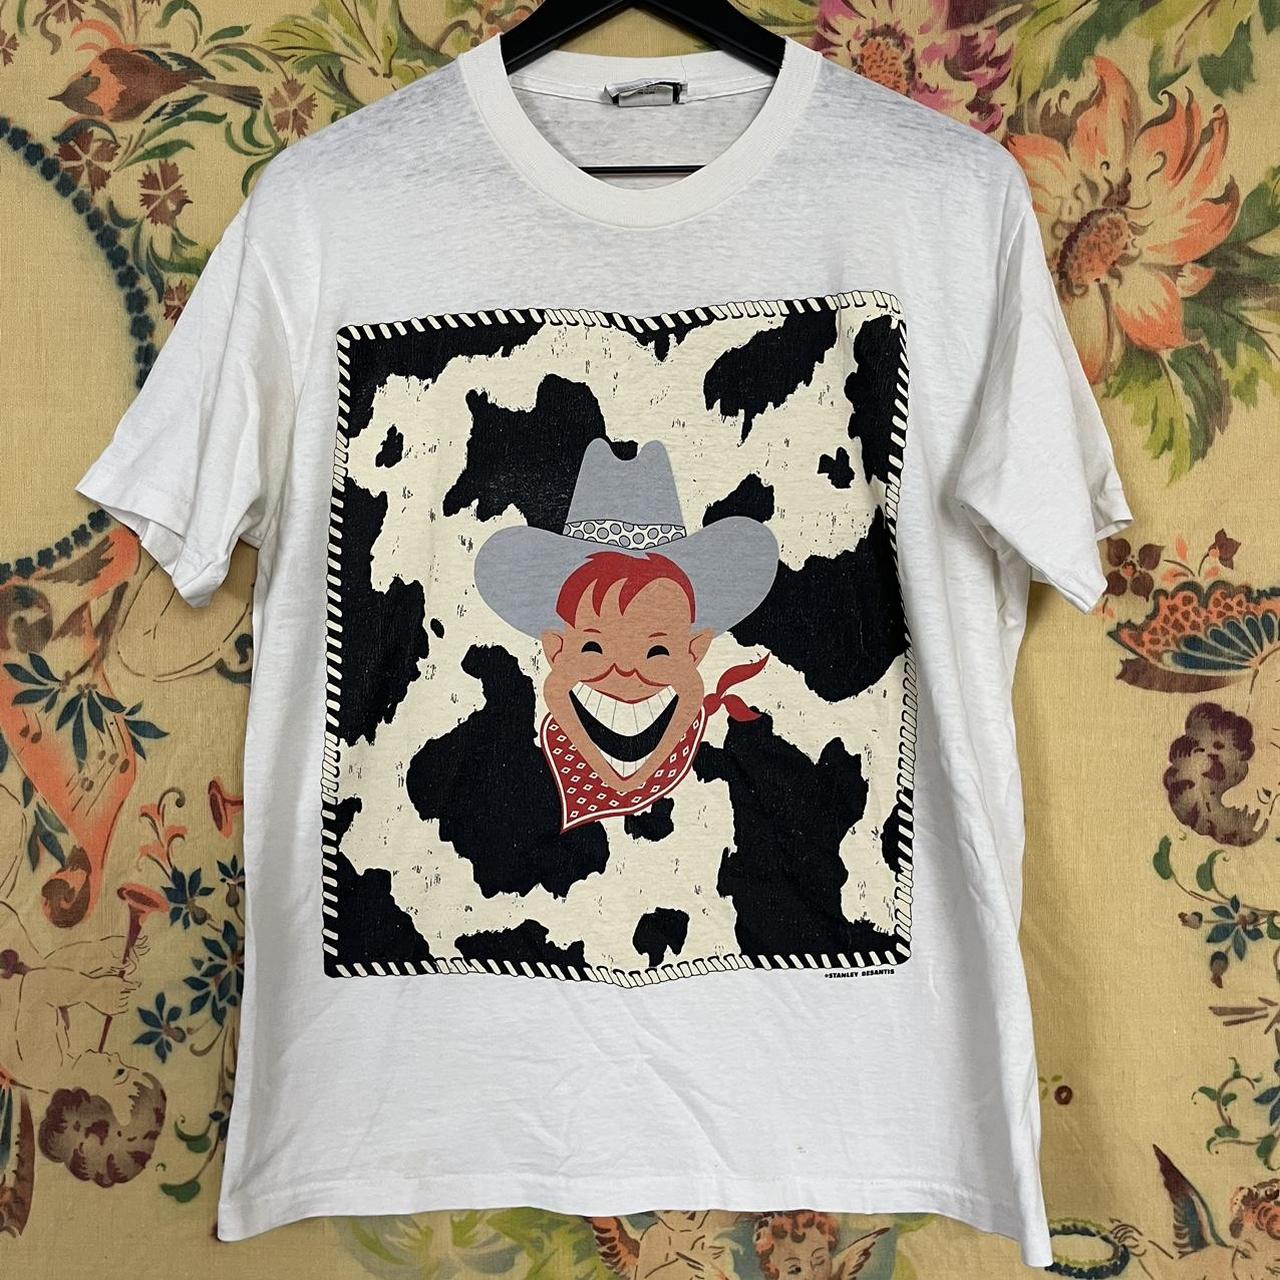 Vintage 80’s Stanley Desantis Cowboy Pop Art t-shirt...